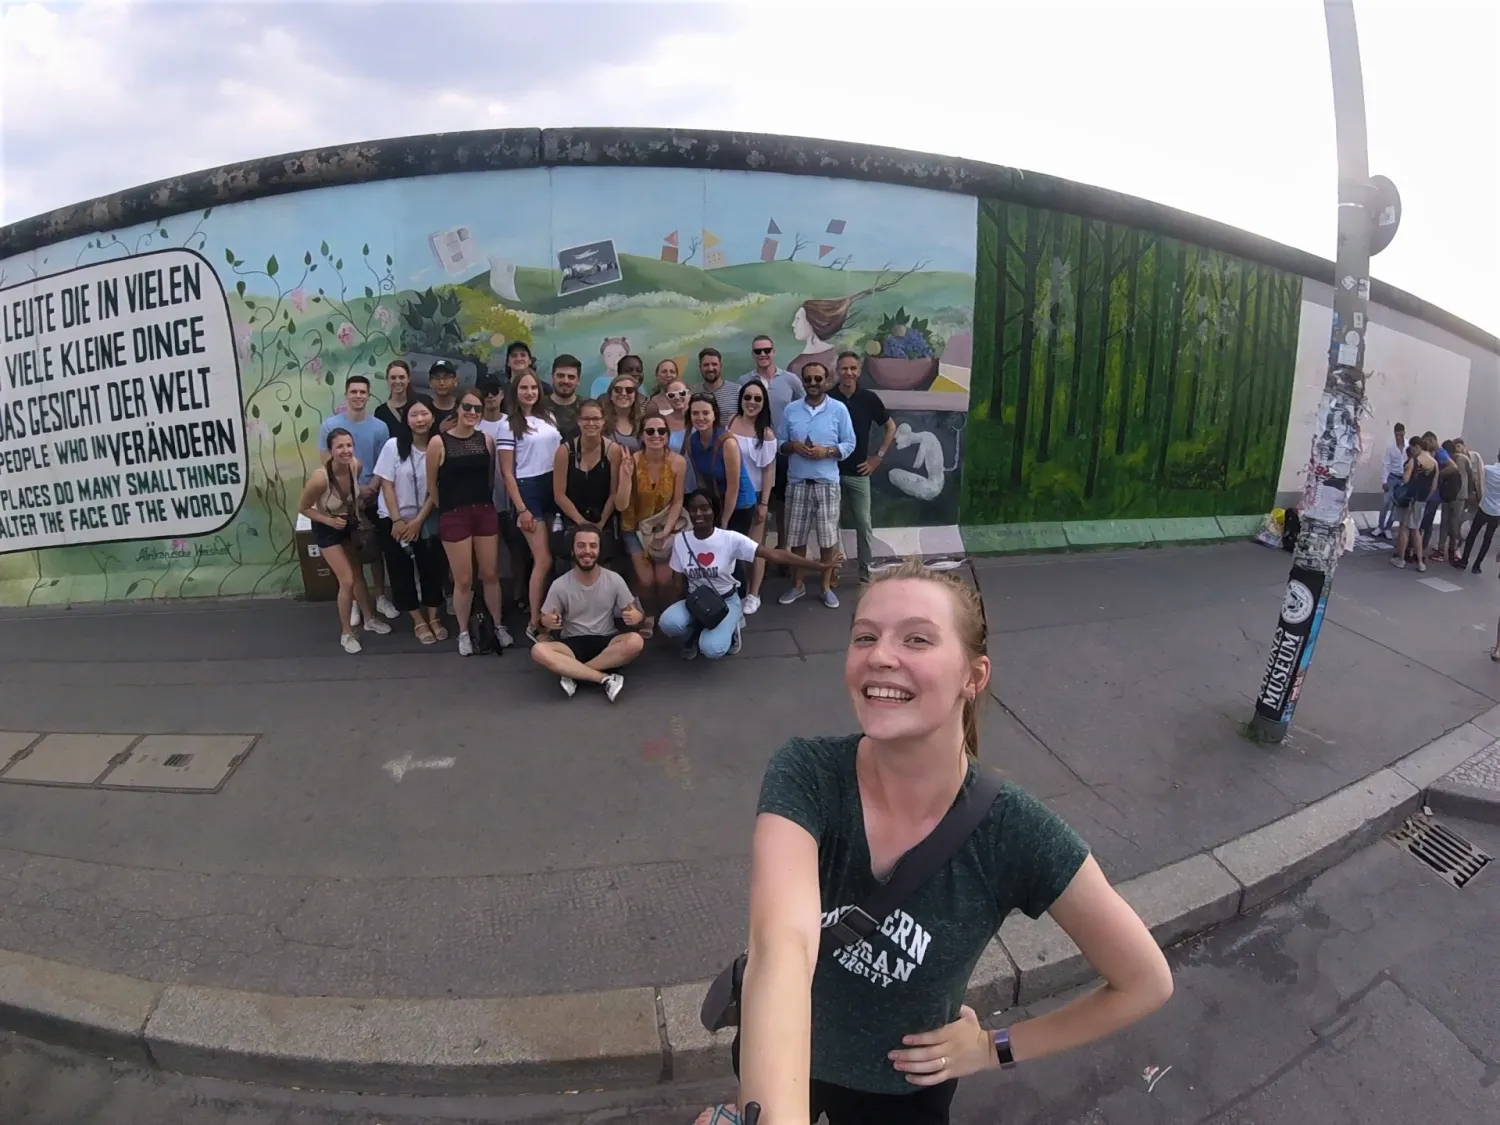 Student taking a selfie in Bielefeld